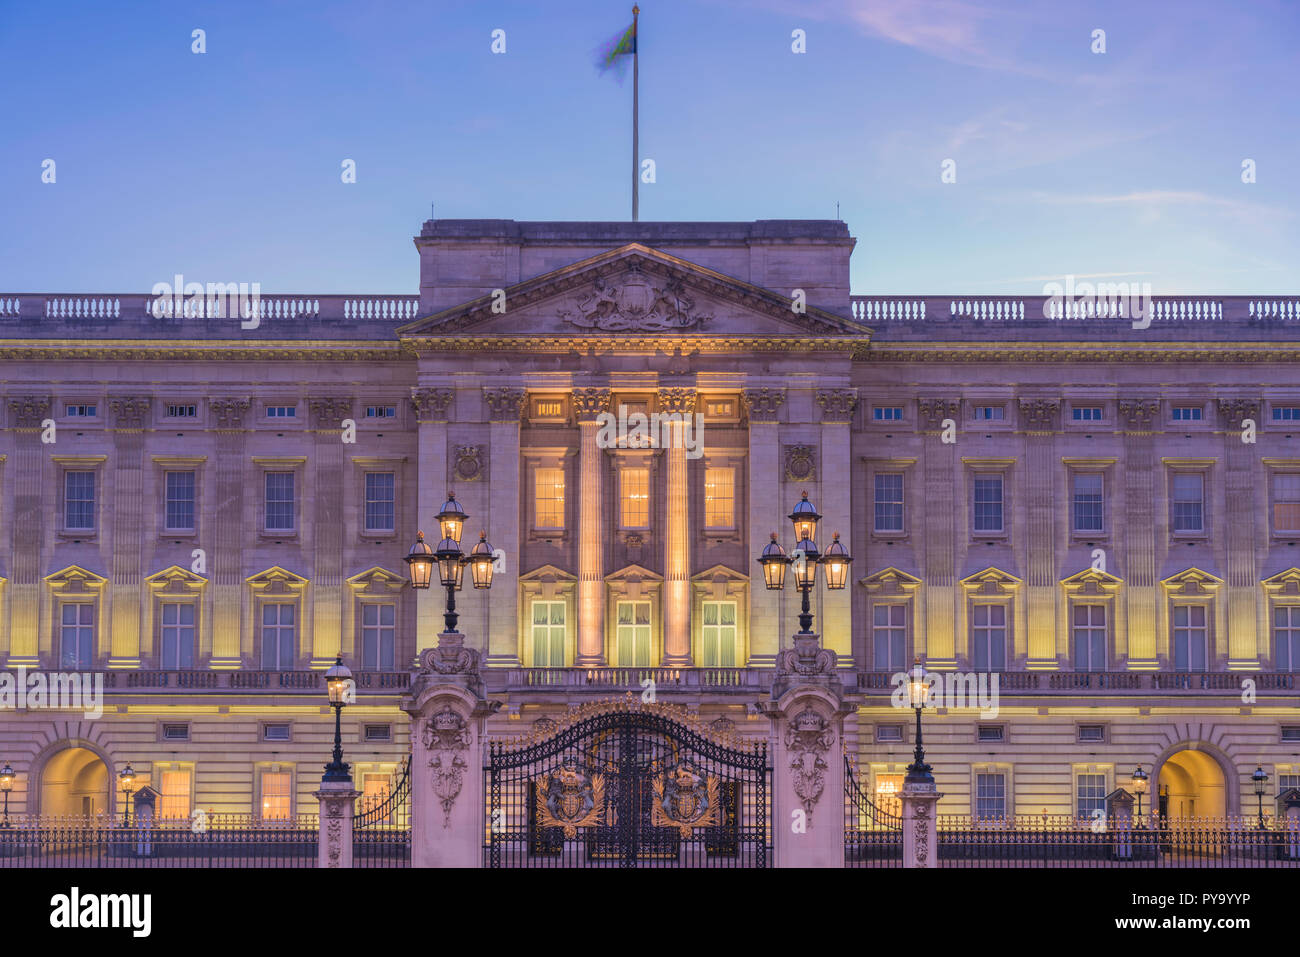 Buckingham Palace, der Königin von England in London. Top Tourismusseite für Großbritannien Großbritannien Englische Touren. Königliche Familie, Testamente & Kate, Prinzessin Meghan, Stockfoto